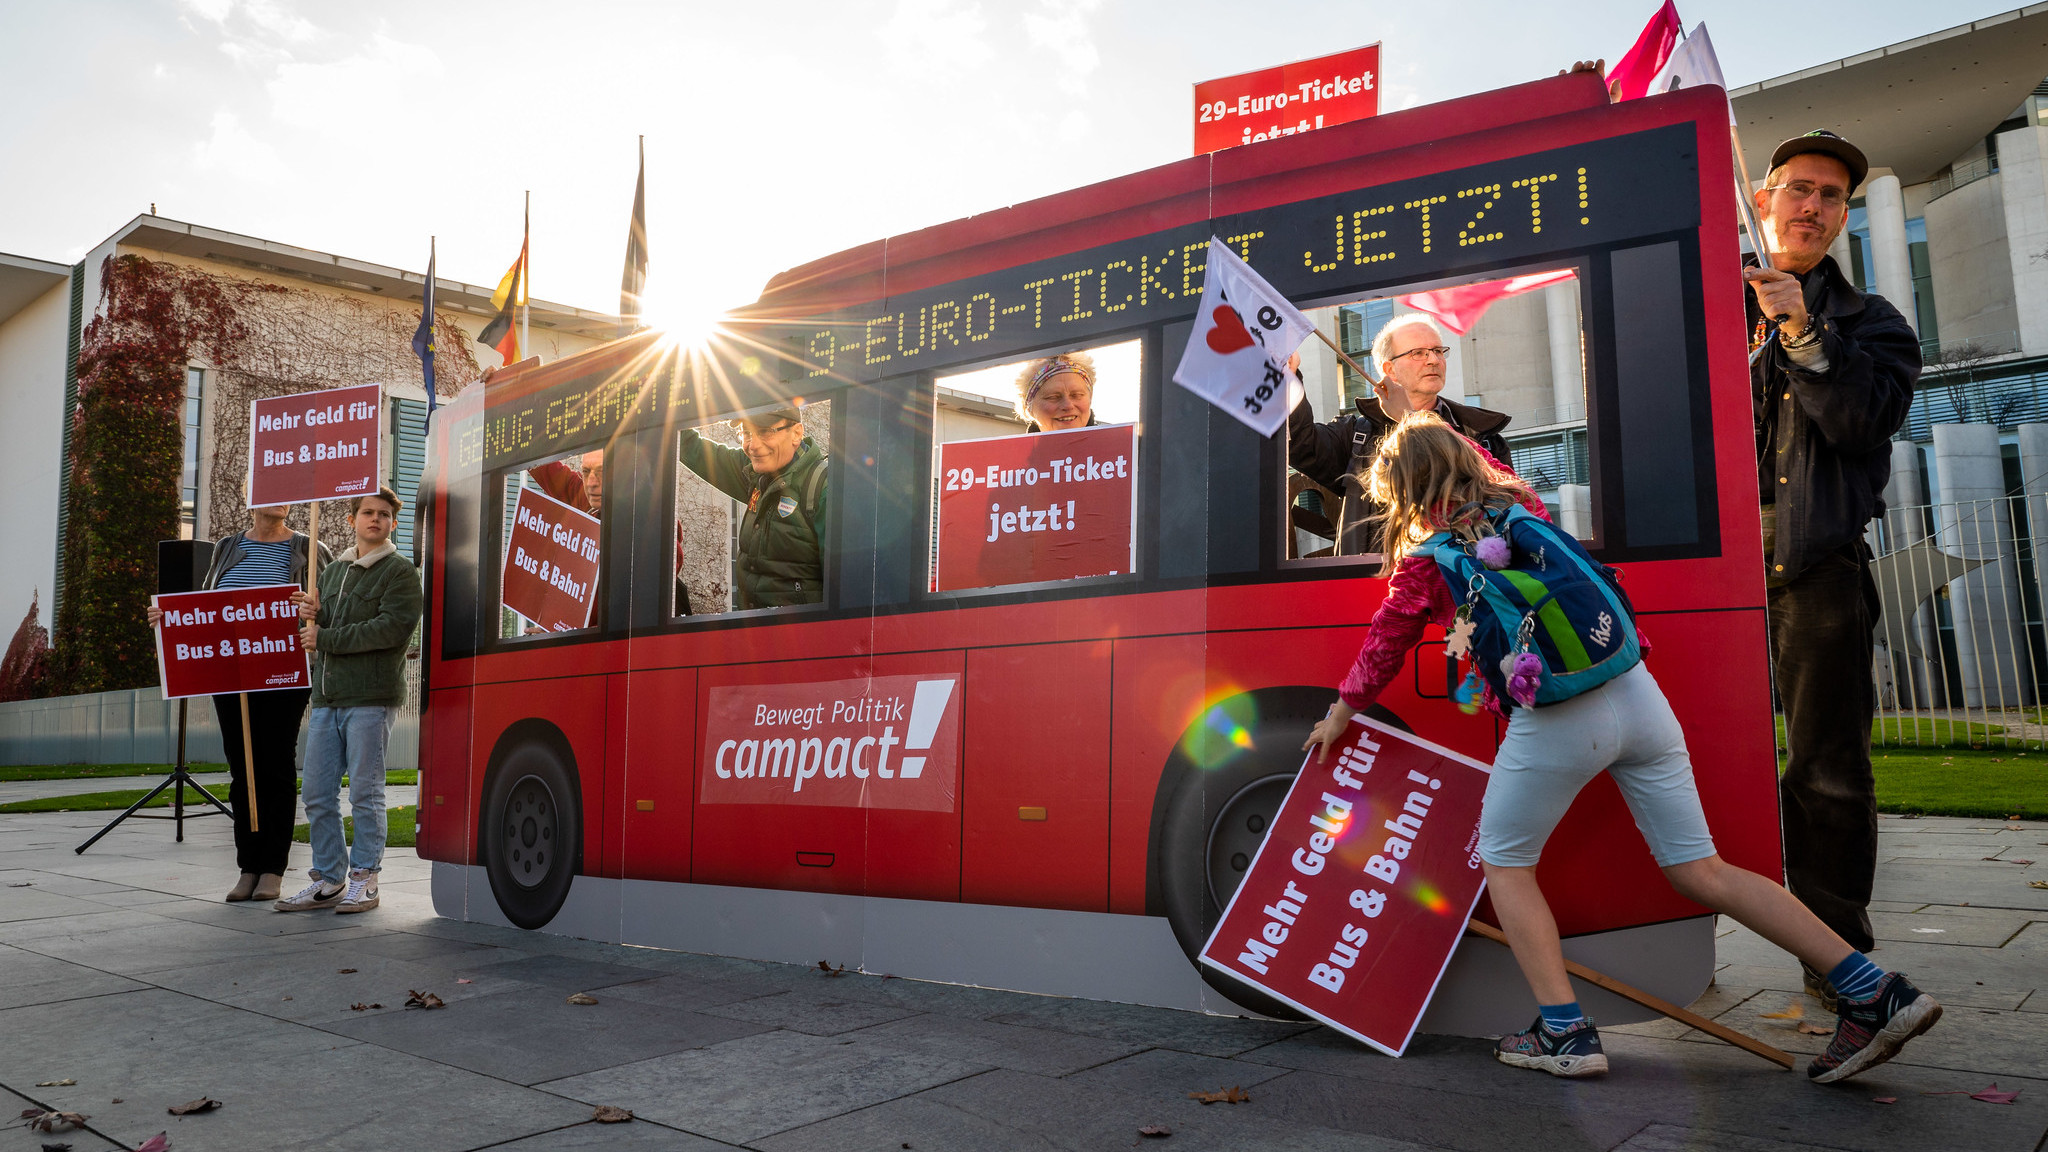 Bildaktion mit roten Pappbus anlässlich Einigung zu 49-Euro-Ticket